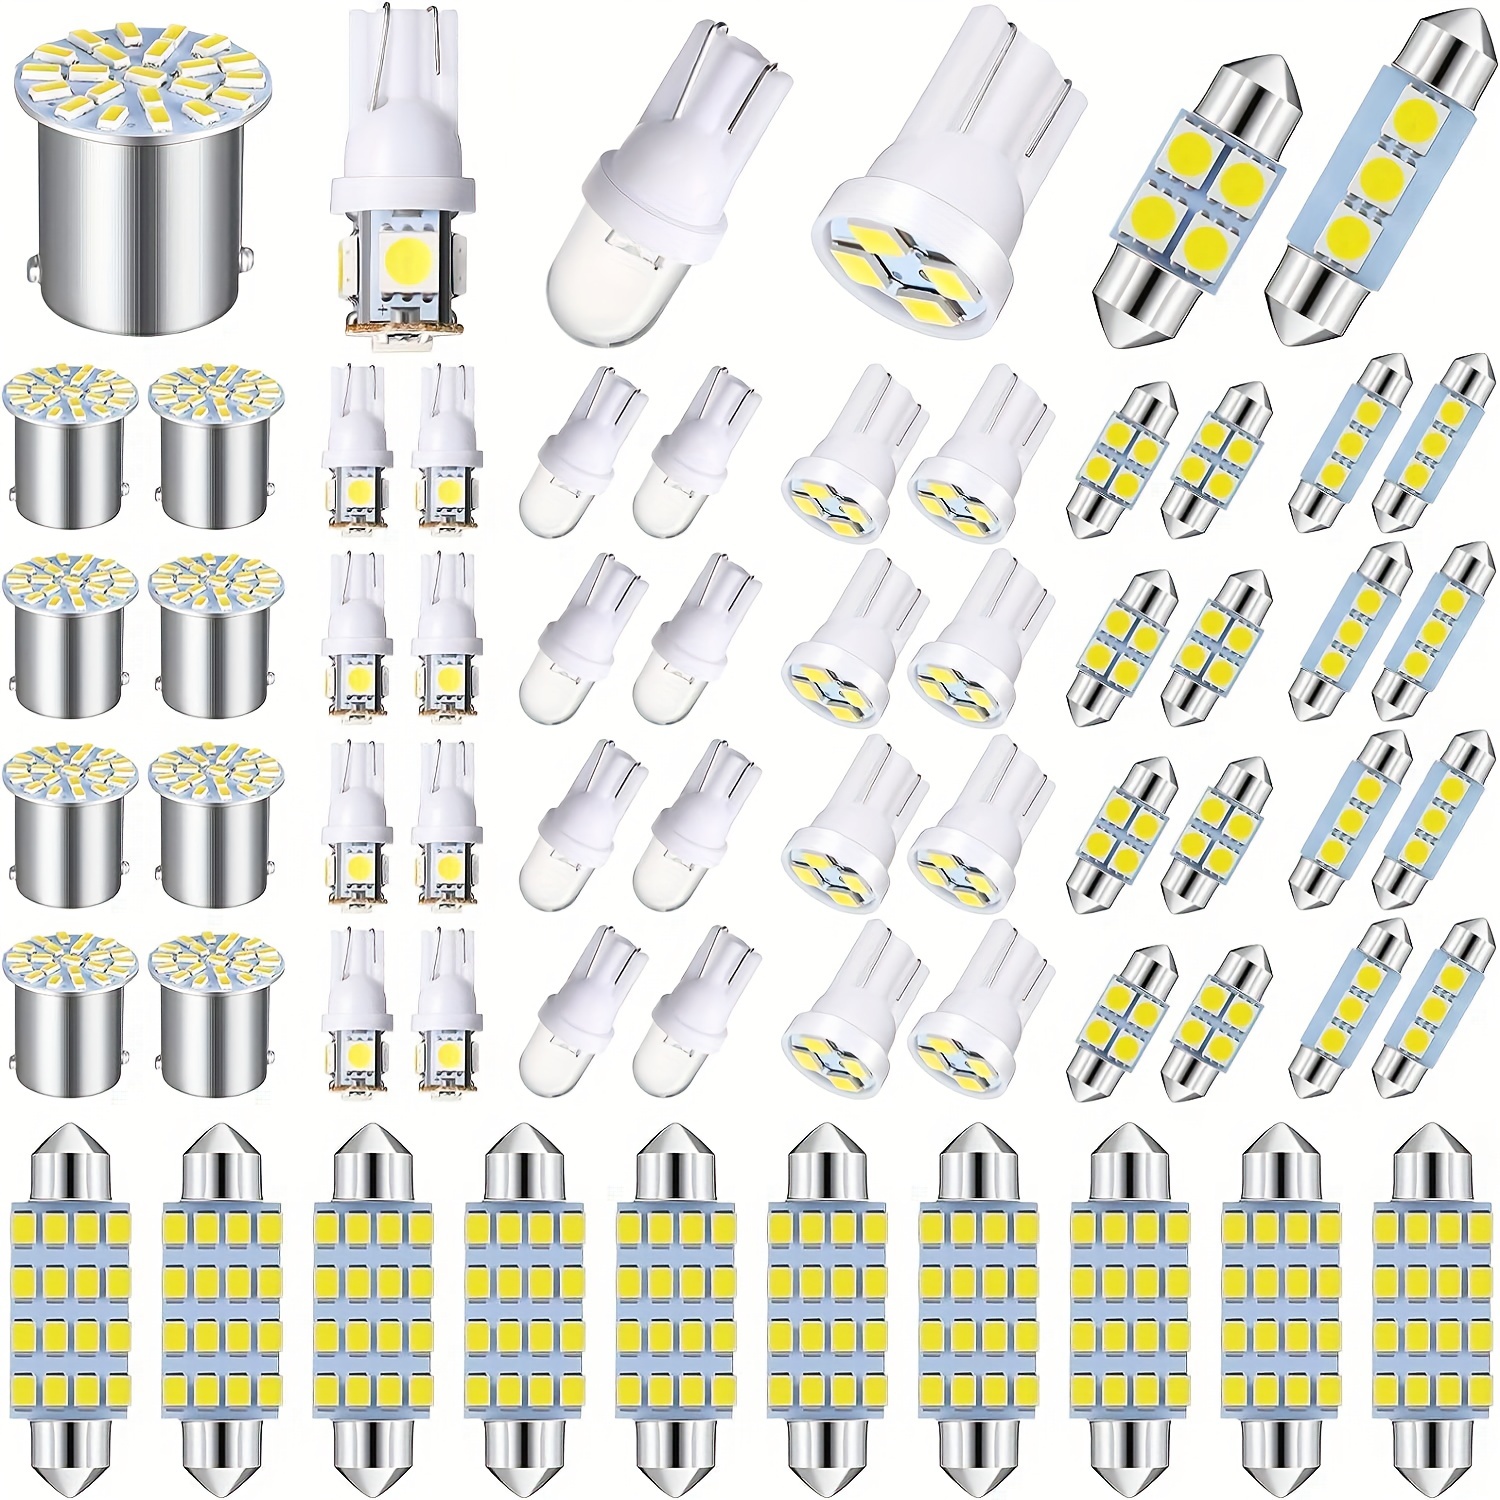 

64pcs Led Car Light Bulb Kit, Interior Light, Led Ceiling Light, 31mm, 36mm, 41mm, Led Light Bulb, Car Interior, Led Pendant Light, License Plate Light